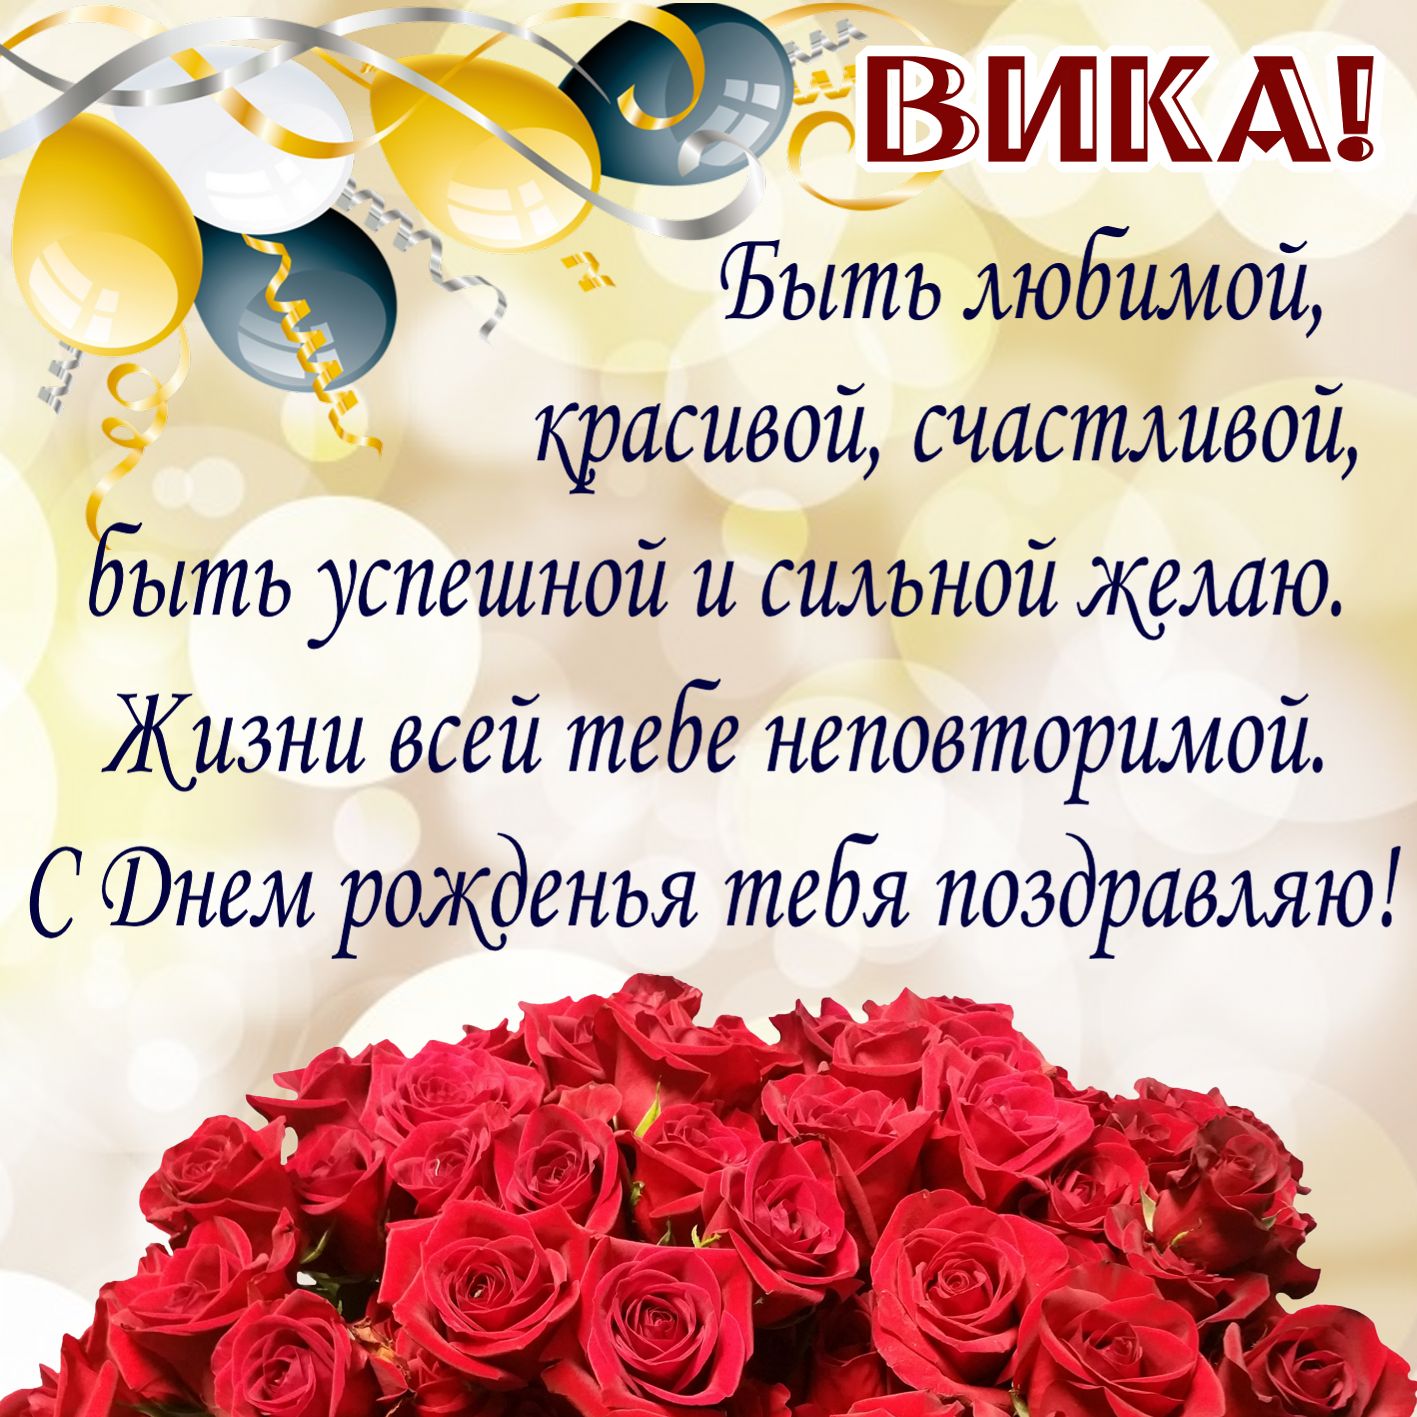 Открытка на День рождения Вике - красивое пожелание на фоне красных роз